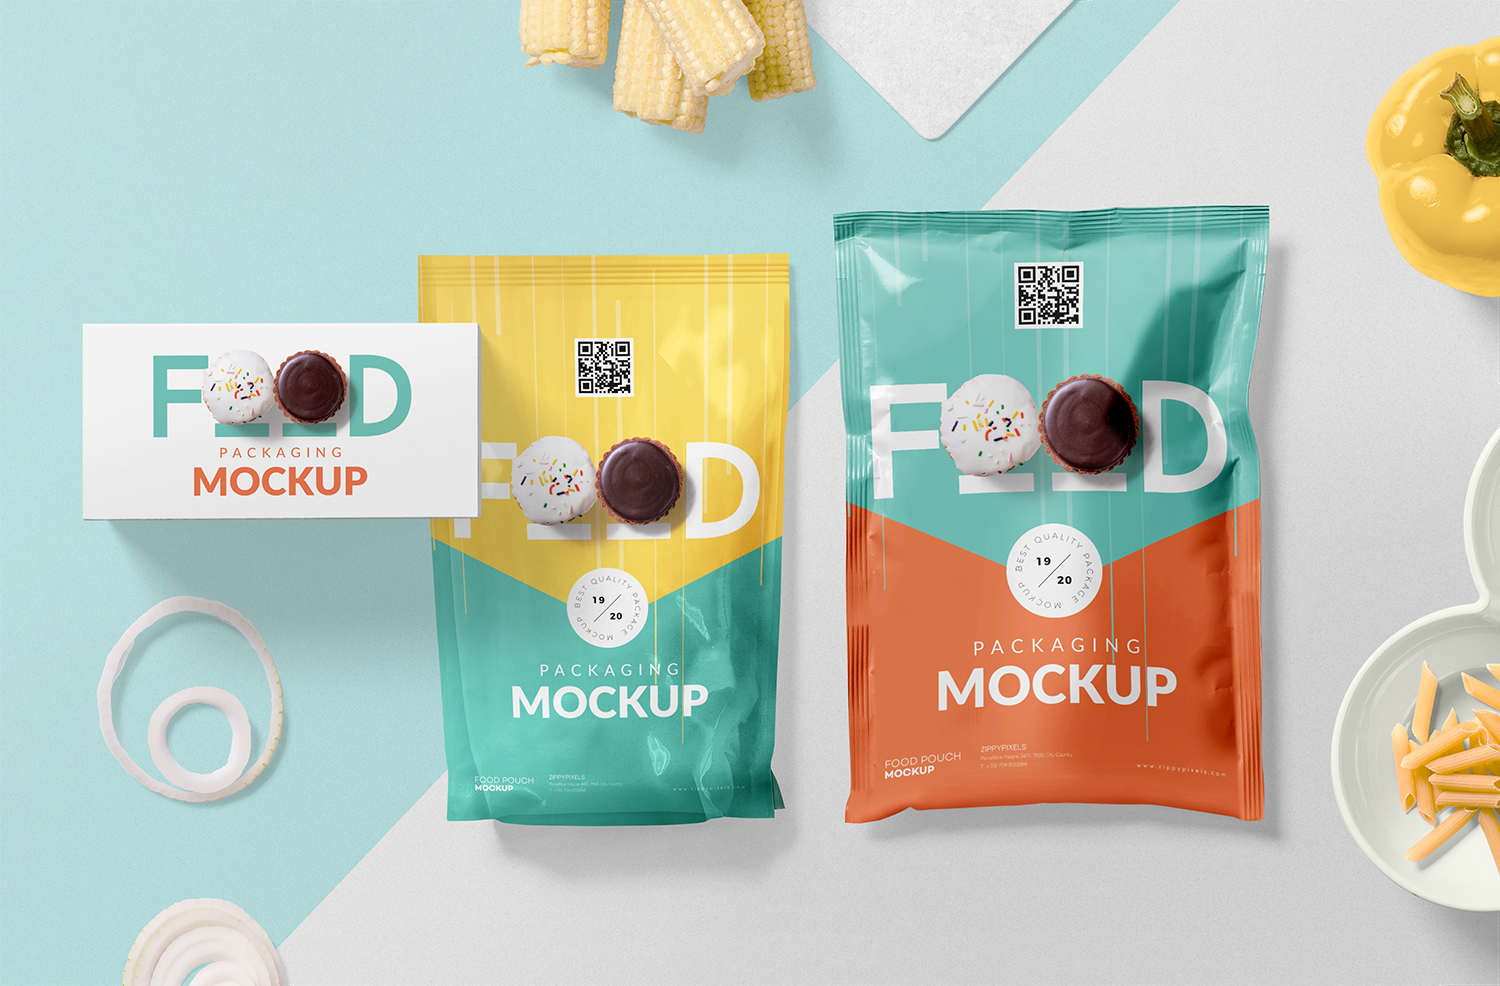 Download Free Food Packaging Mockup Psd Free Mockup PSD Mockup Templates